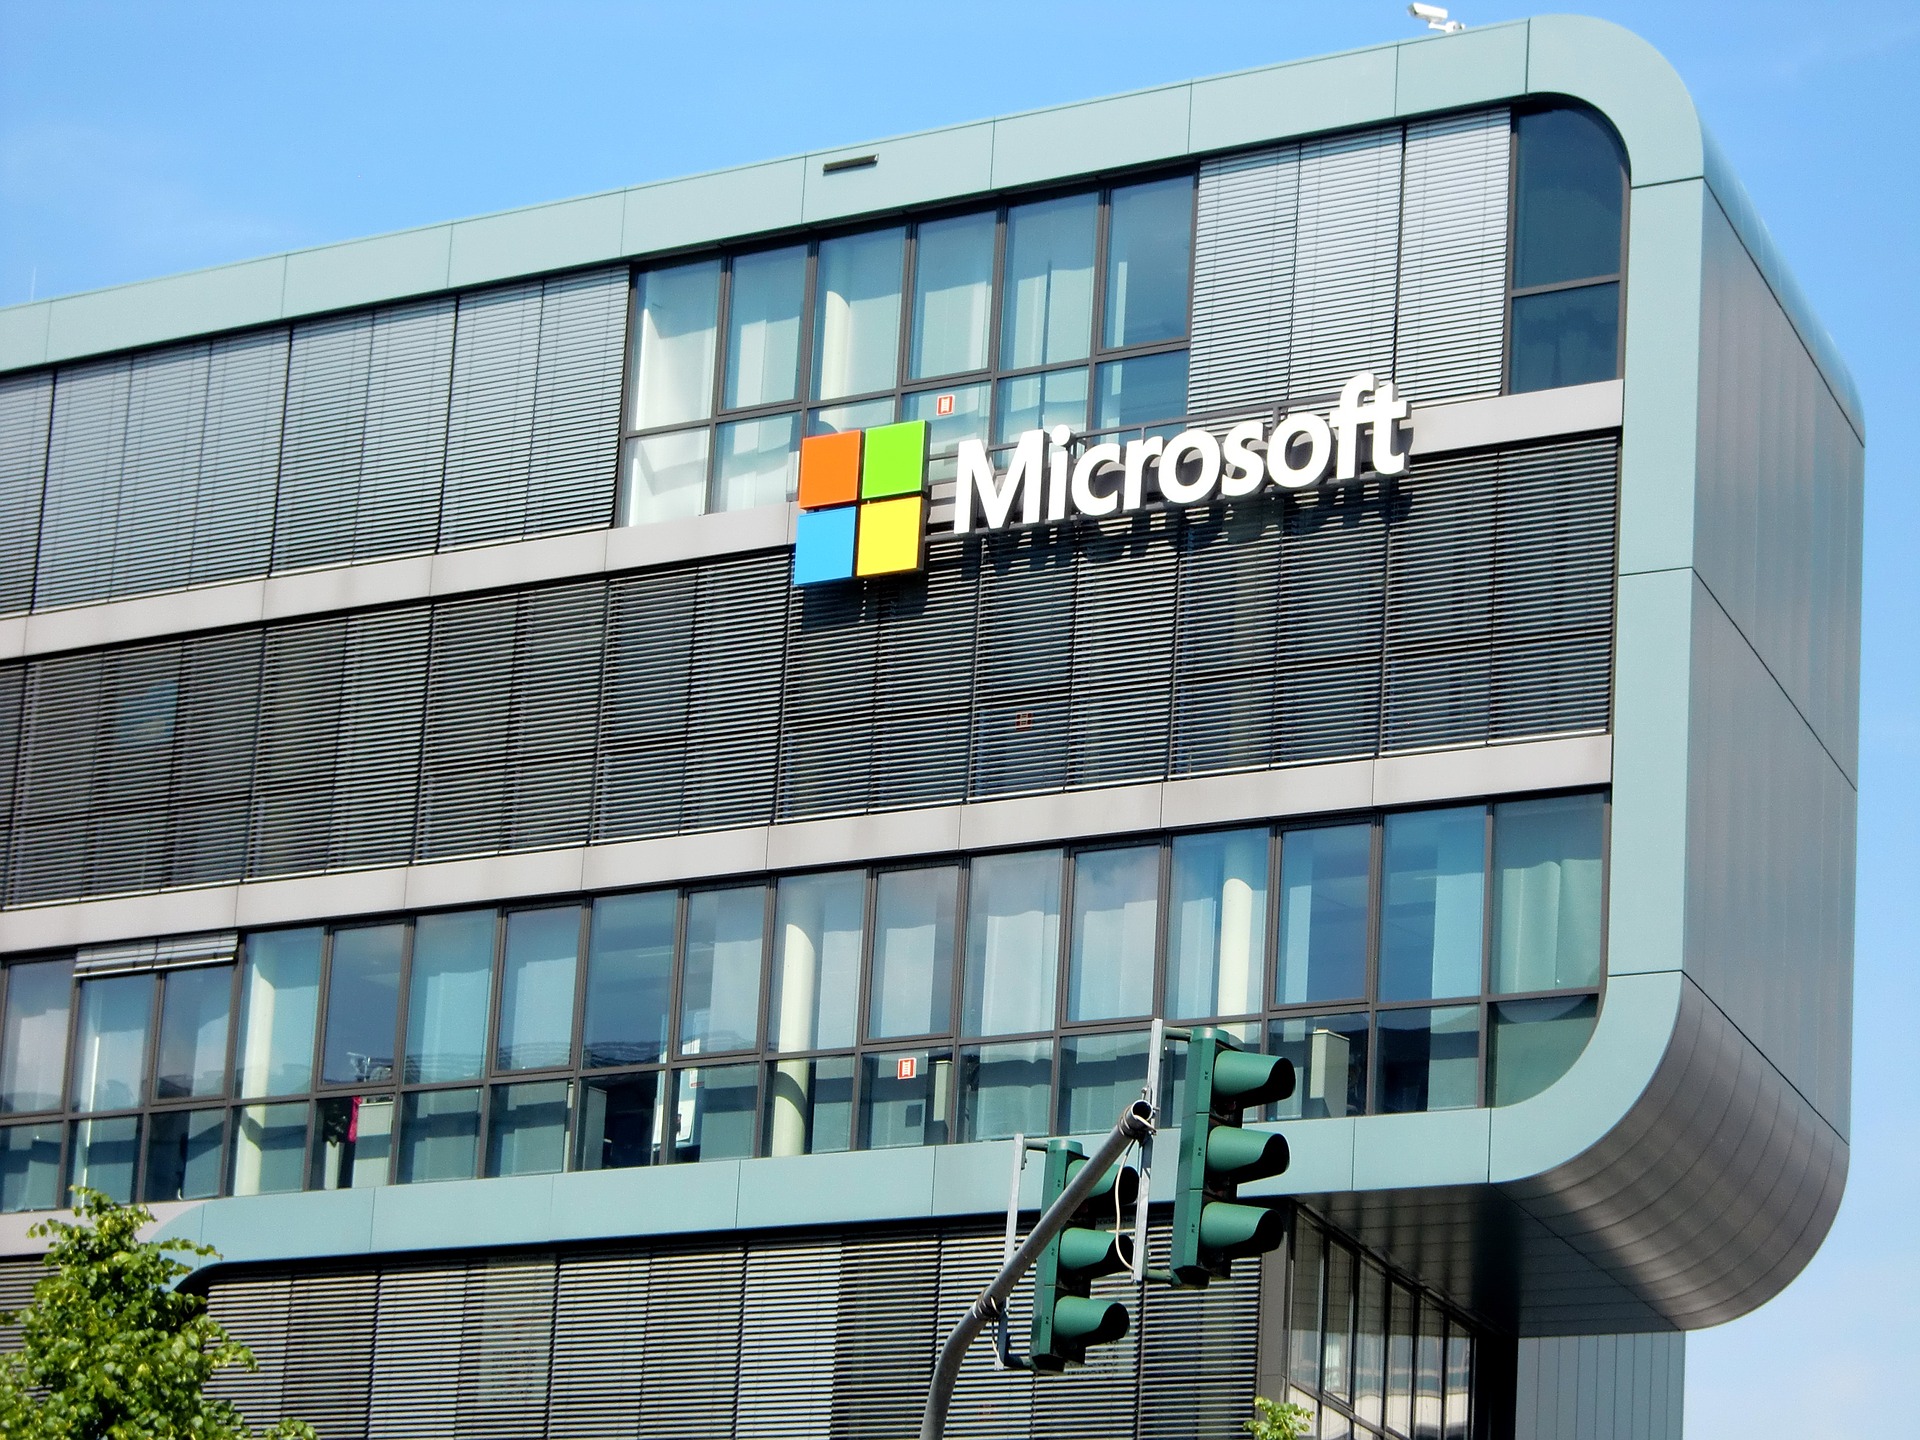 Microsoft registra lucro de US$ 8,4 bilhões no 2º trimestre fiscal de 2019